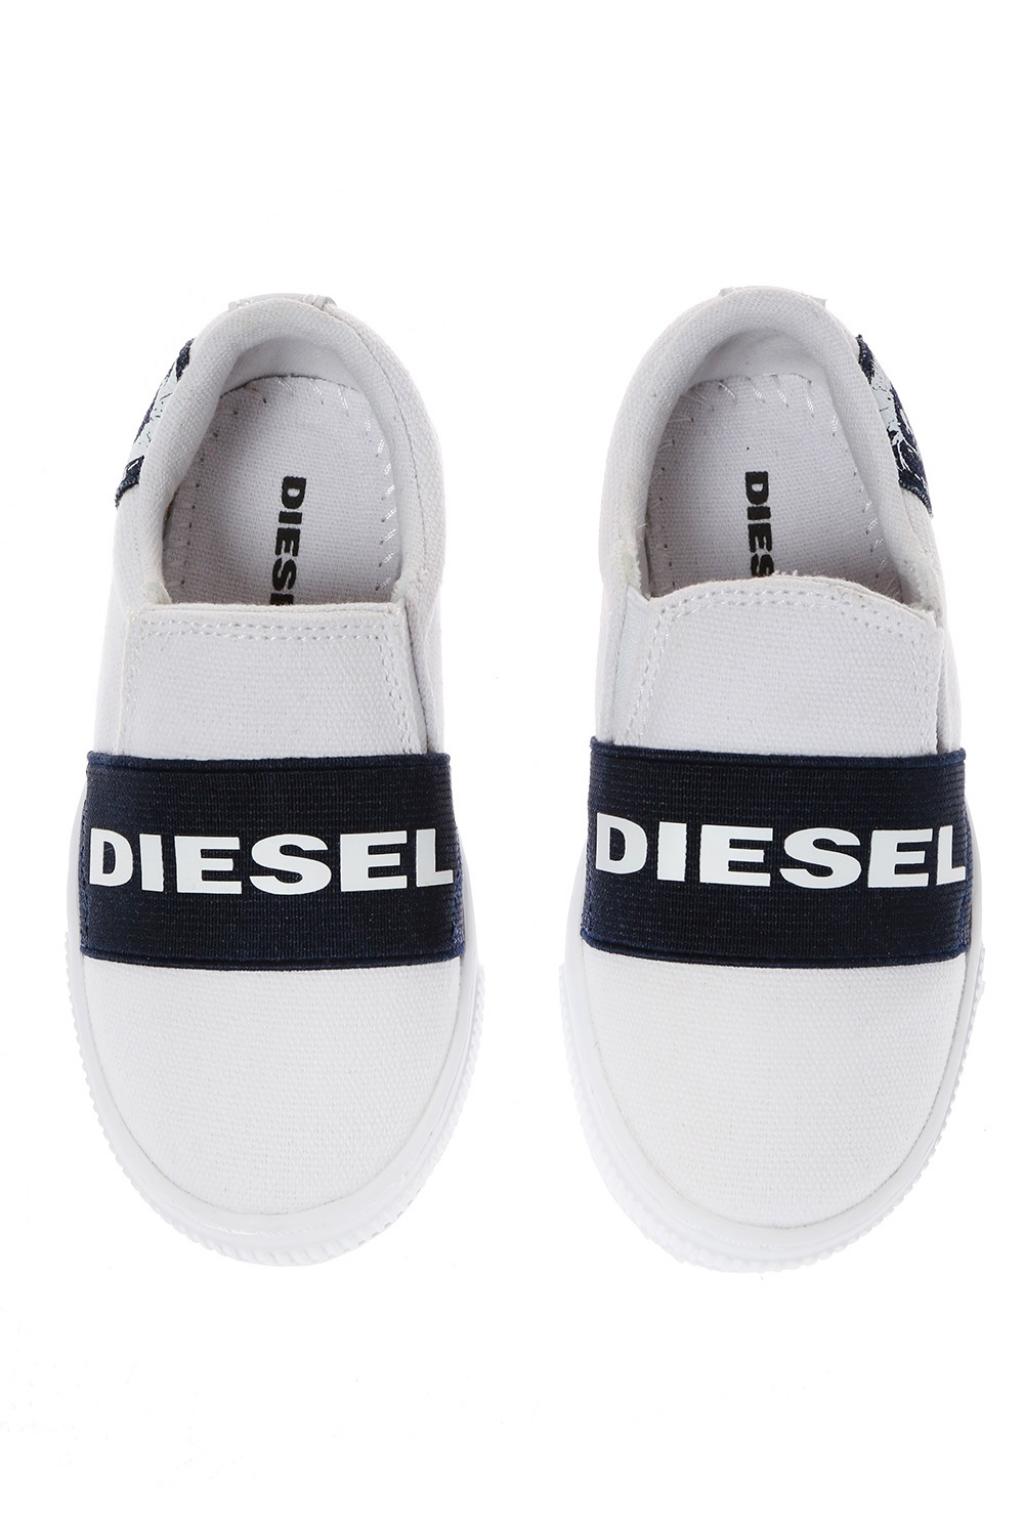 slip on diesel shoes